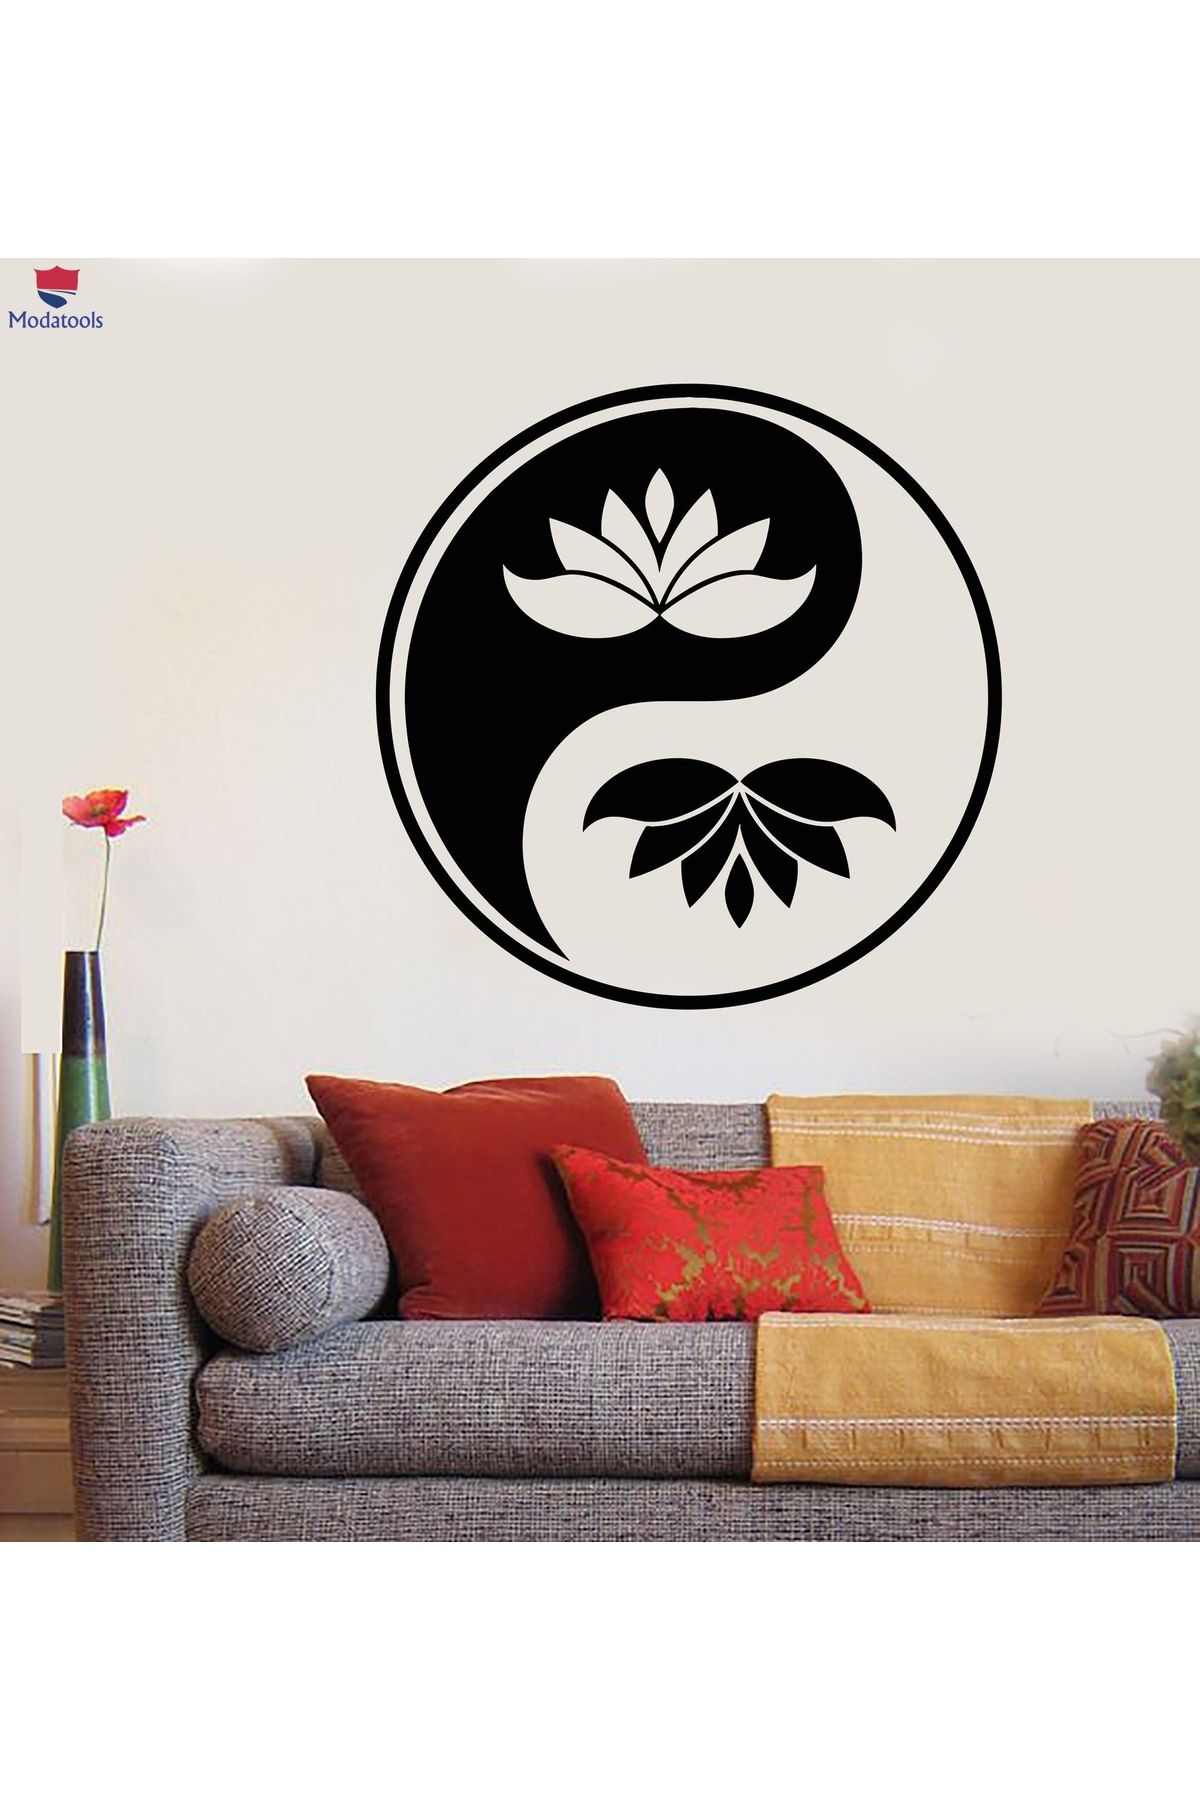 Modatools Oturma Odası, Yatak Odası Duvar Sticker Yin Yang Budizm Sembolü Lotus Çiçeği Çıkartmaları